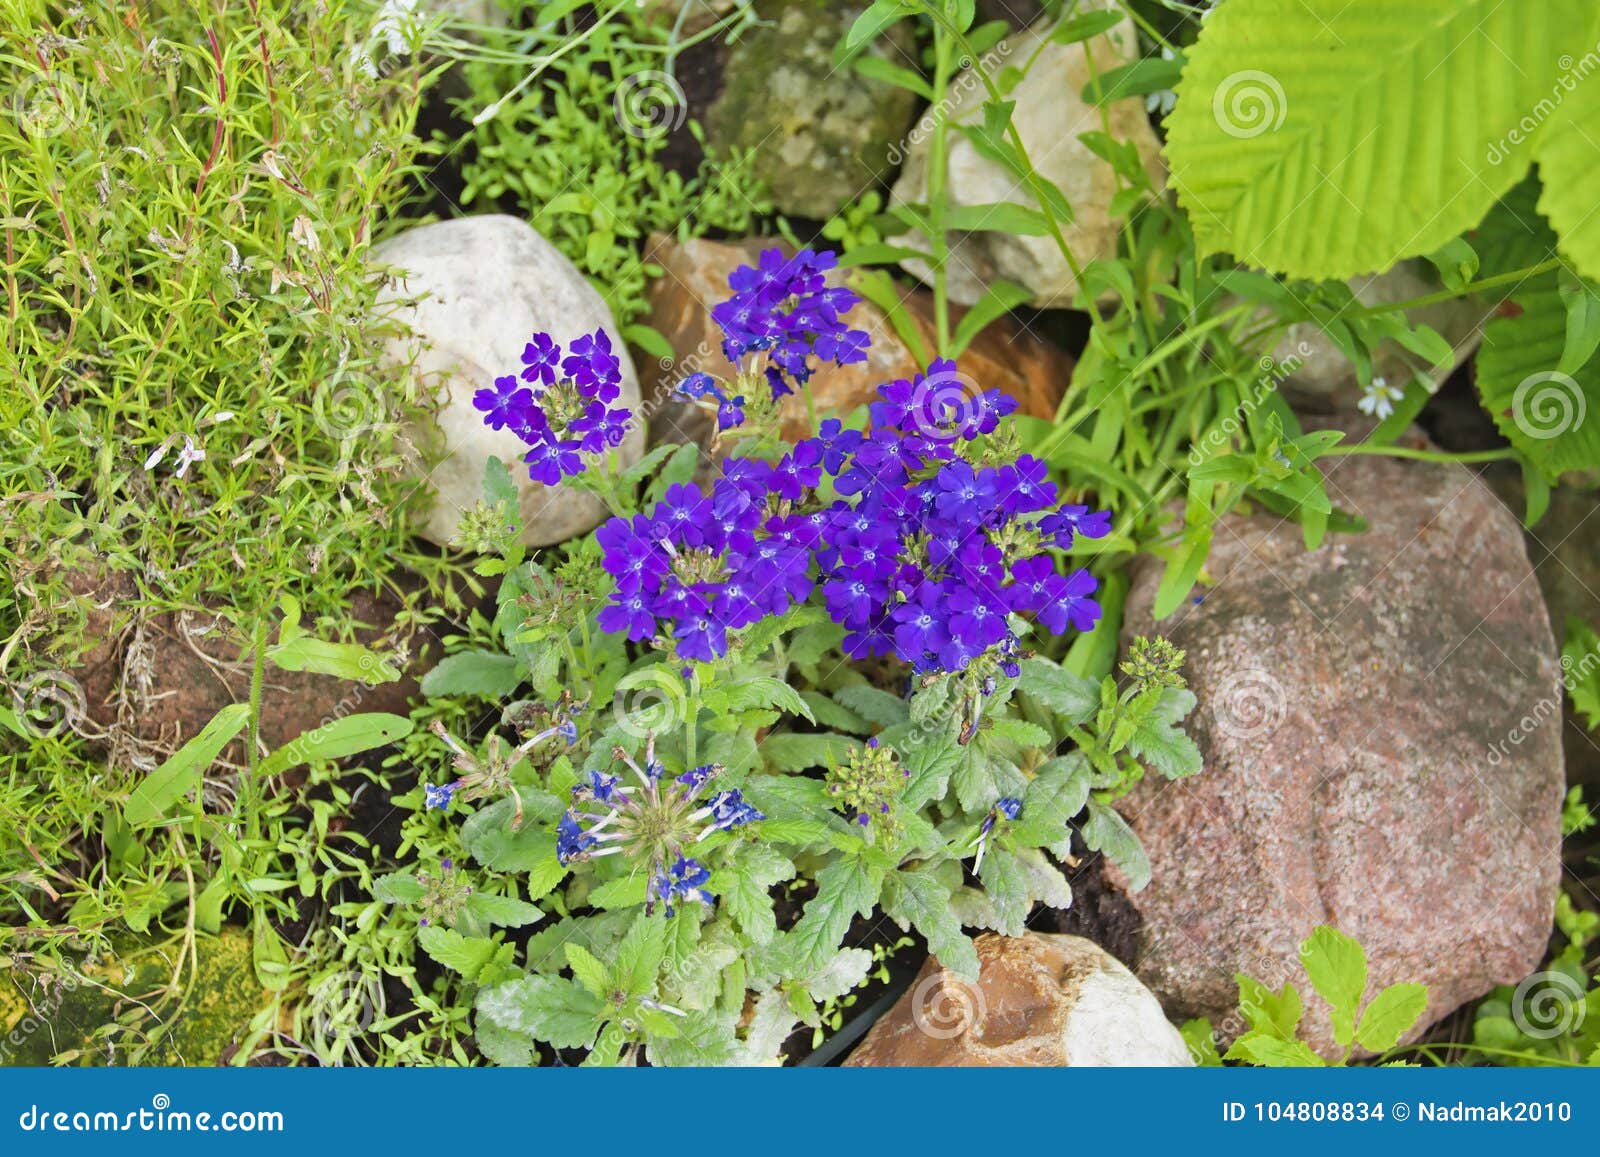 Verveine Bleue Sur Une Colline Rocheuse Dans Le Jardin Photo stock - Image  du flore, vert: 104808834